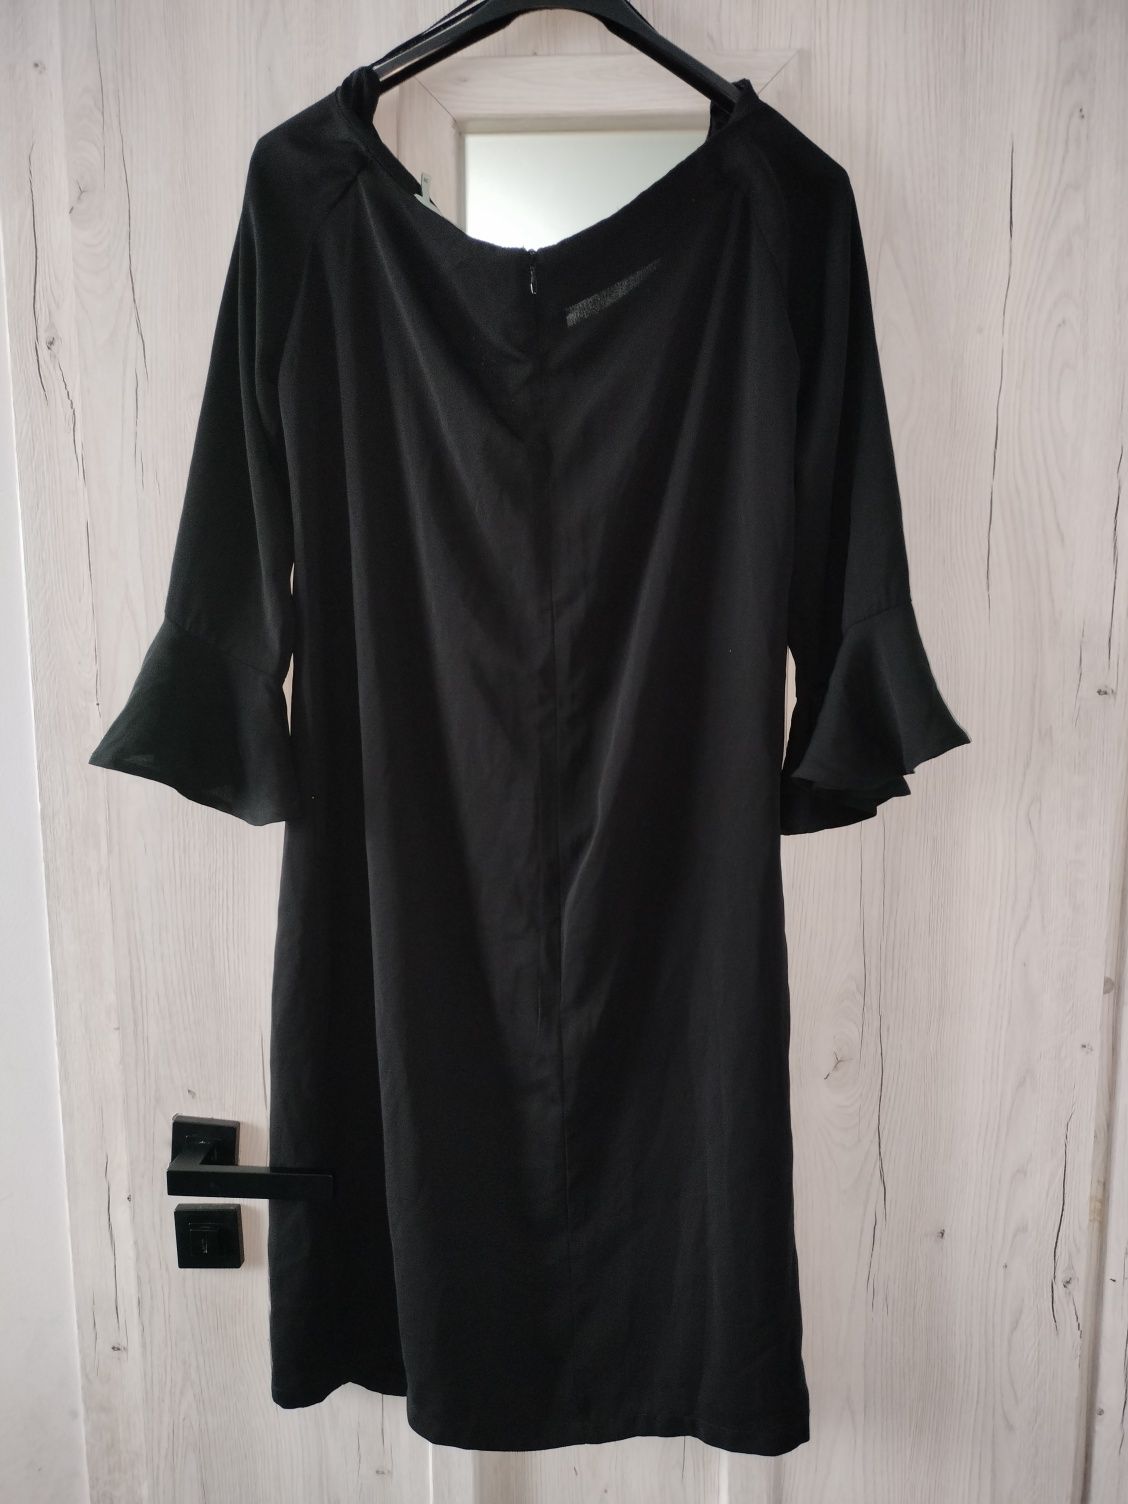 Czarna sukienka elegancka wizytowa 36/38 święta sylwester mała czarna